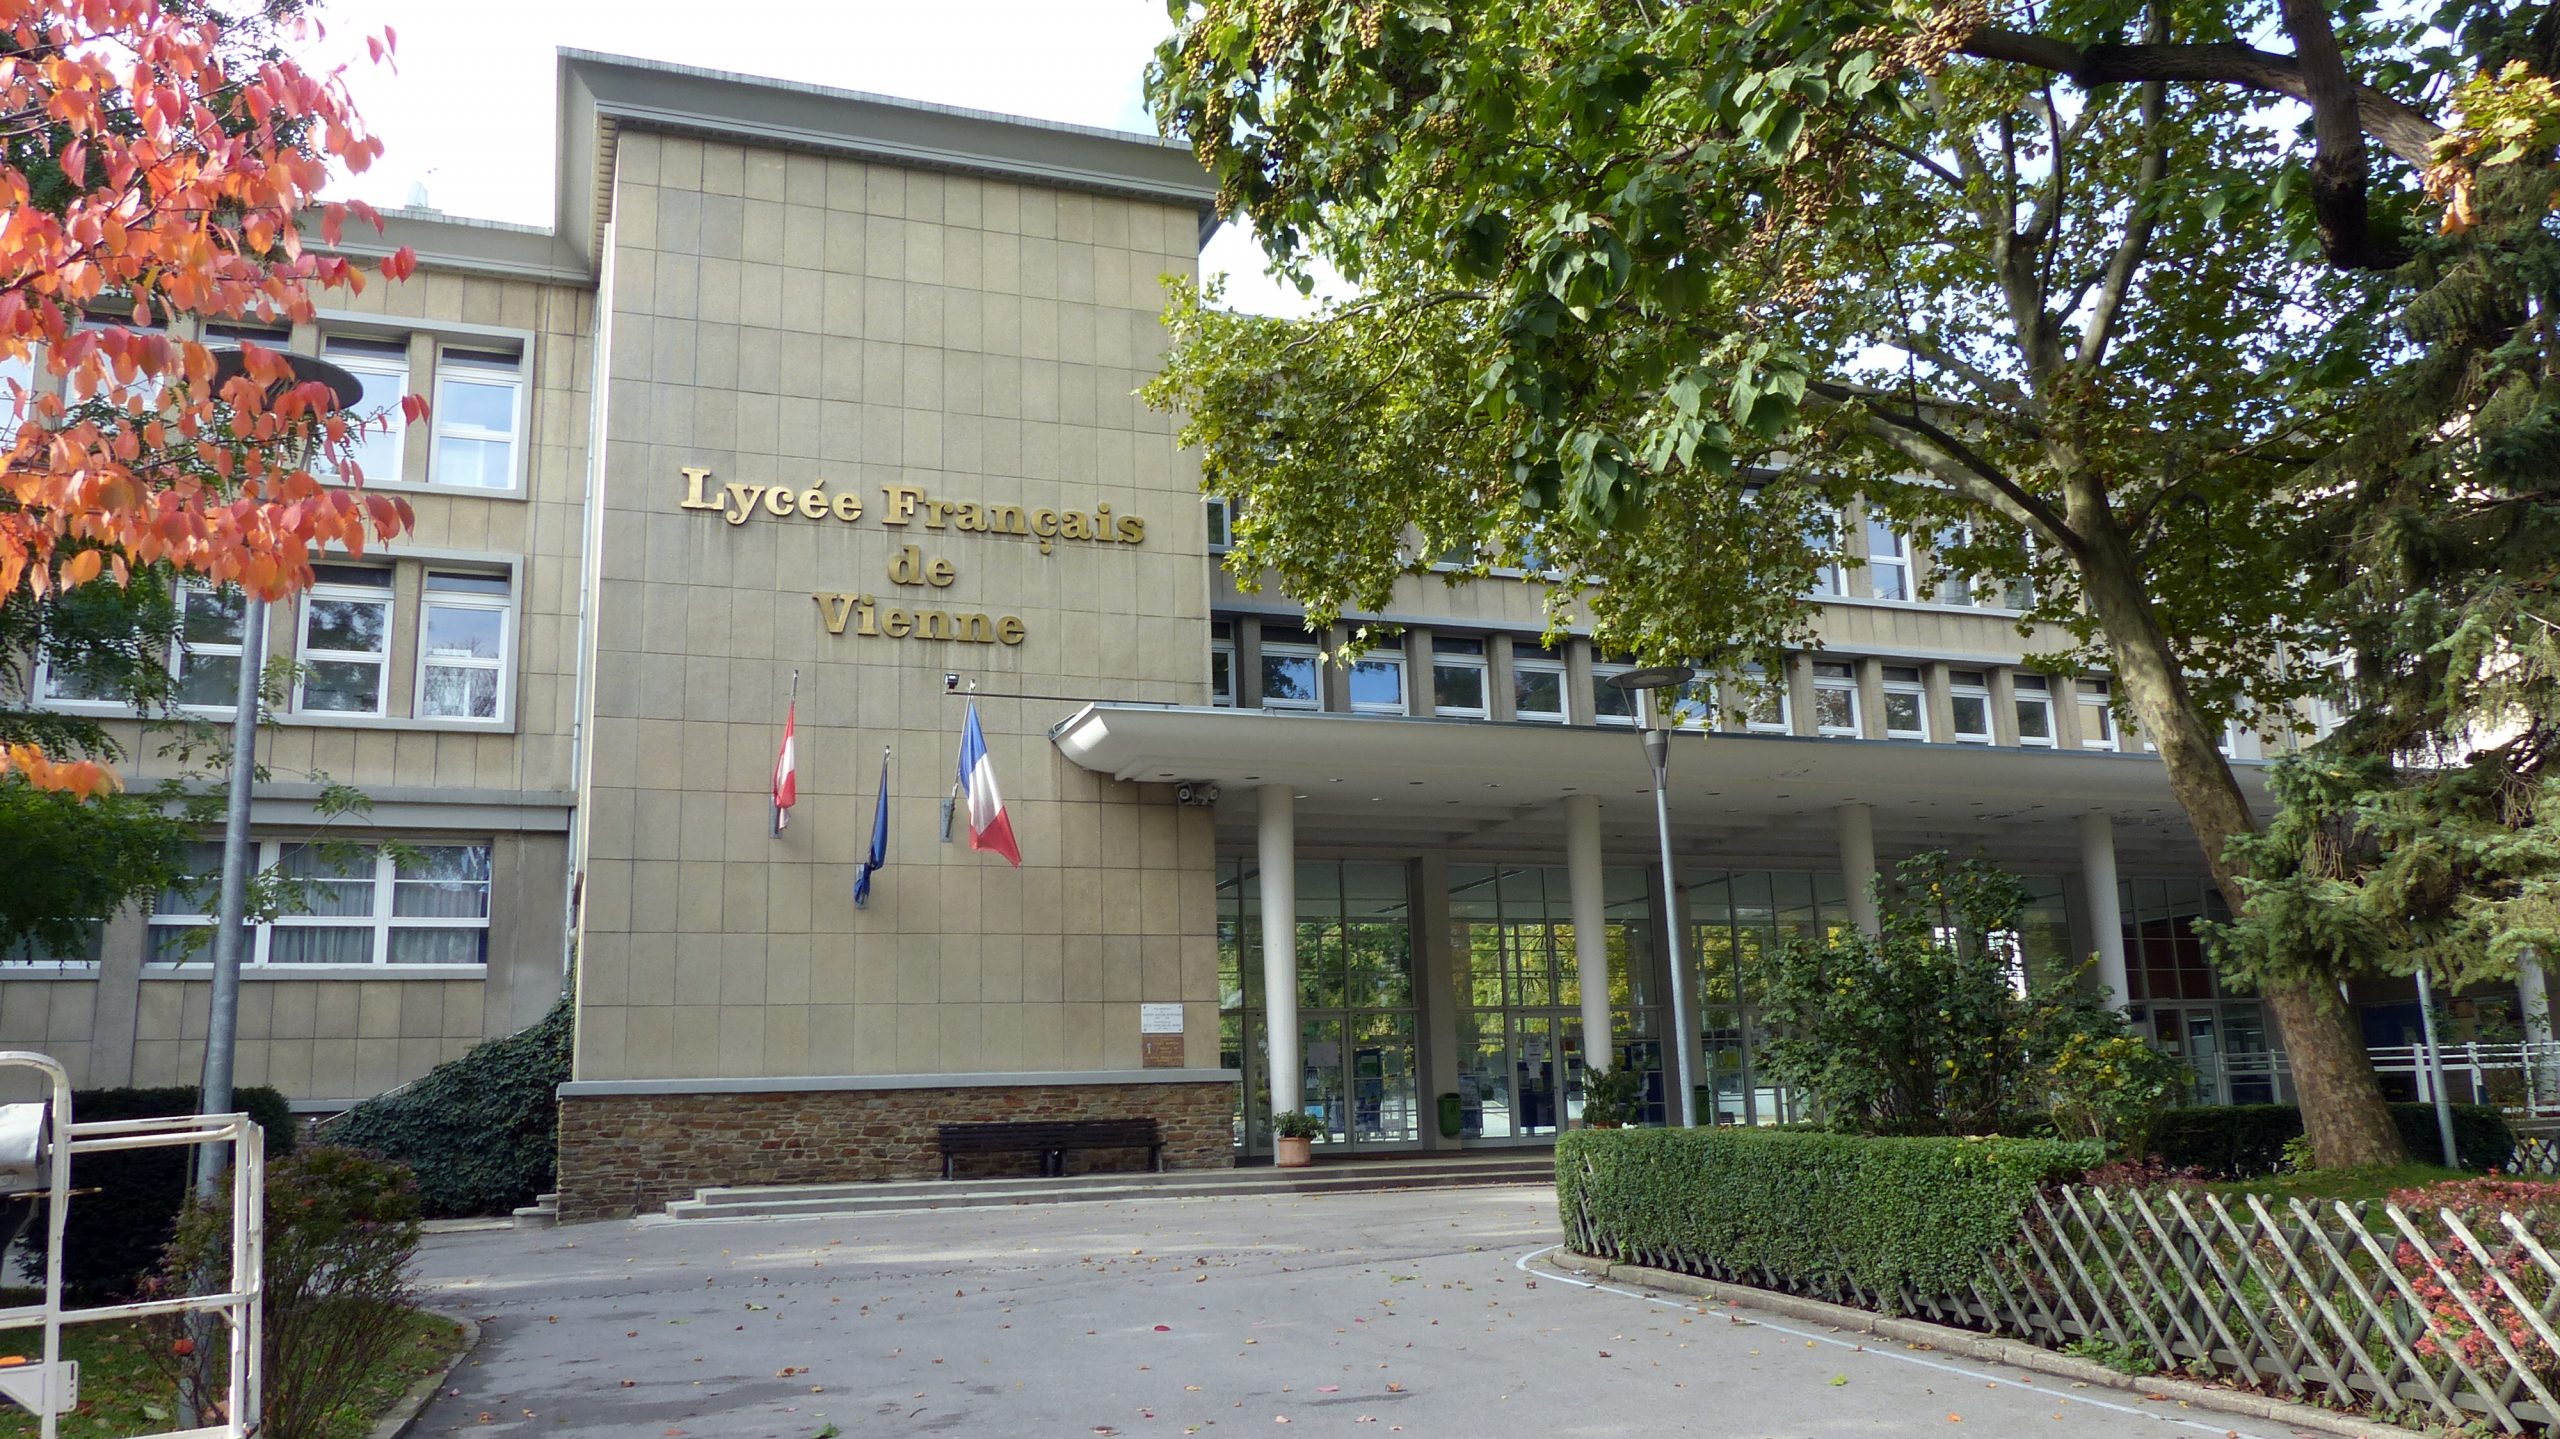 Lycée Français de Vienne